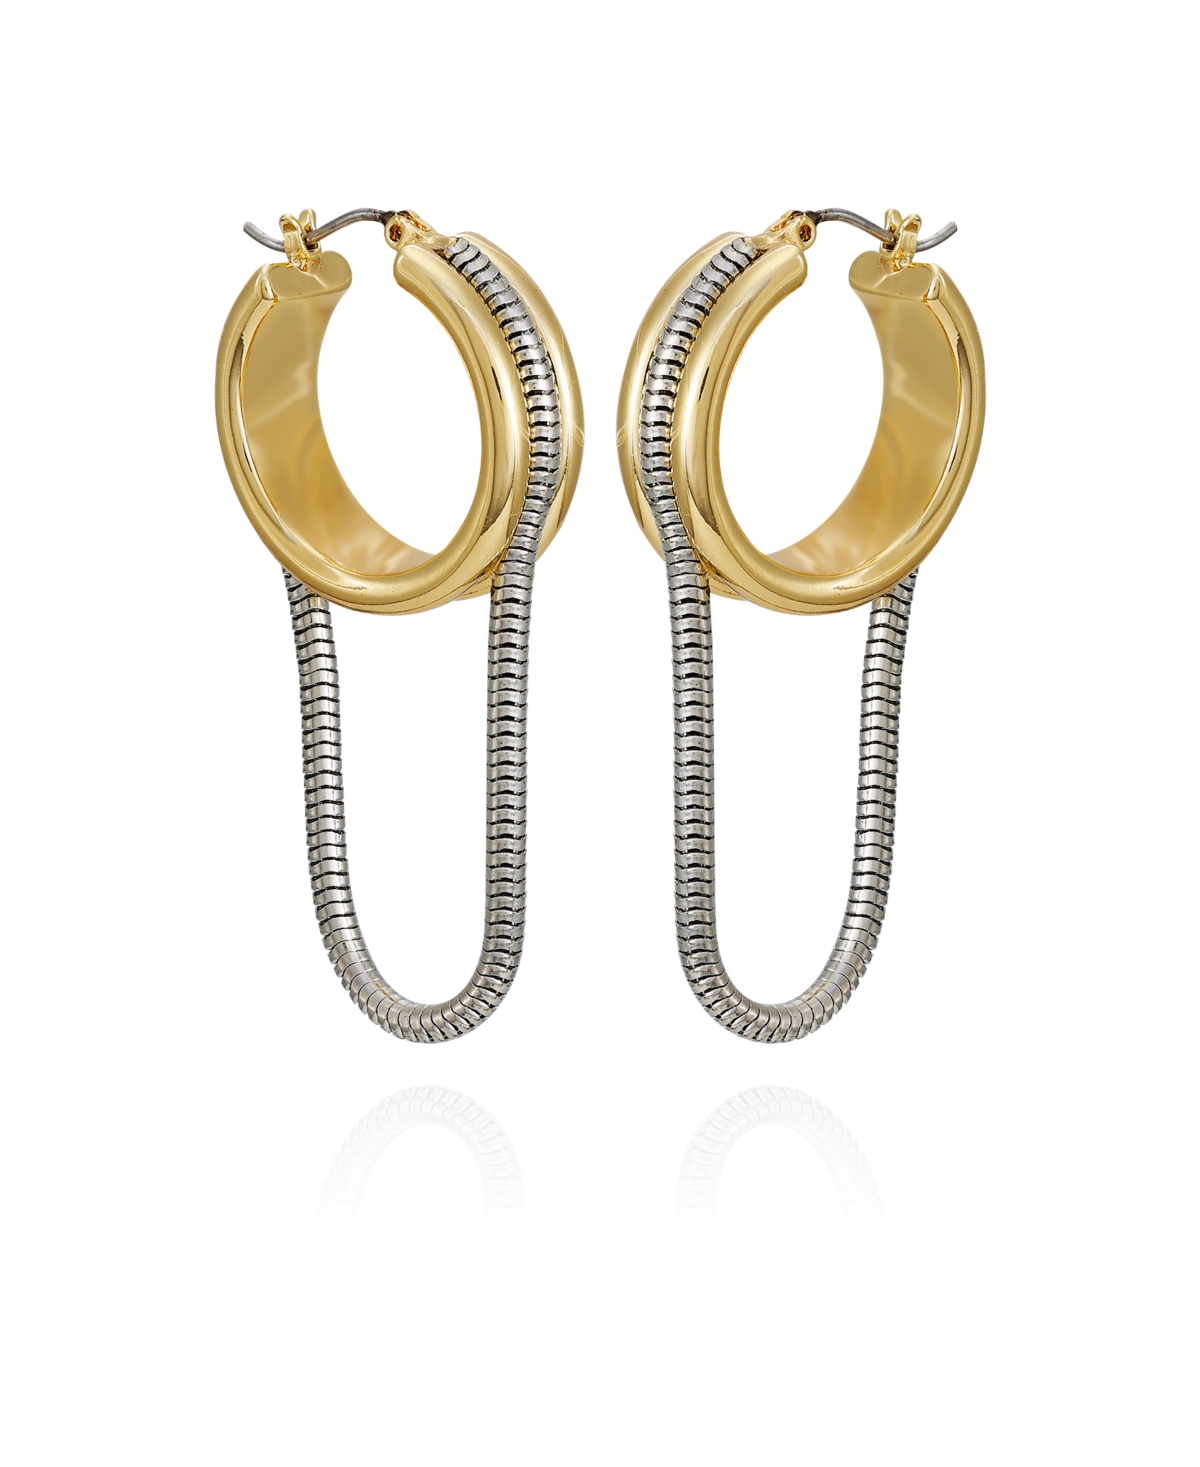 Two-Tone Snake Chain Drop Hoop Earrings - Gold, Silver